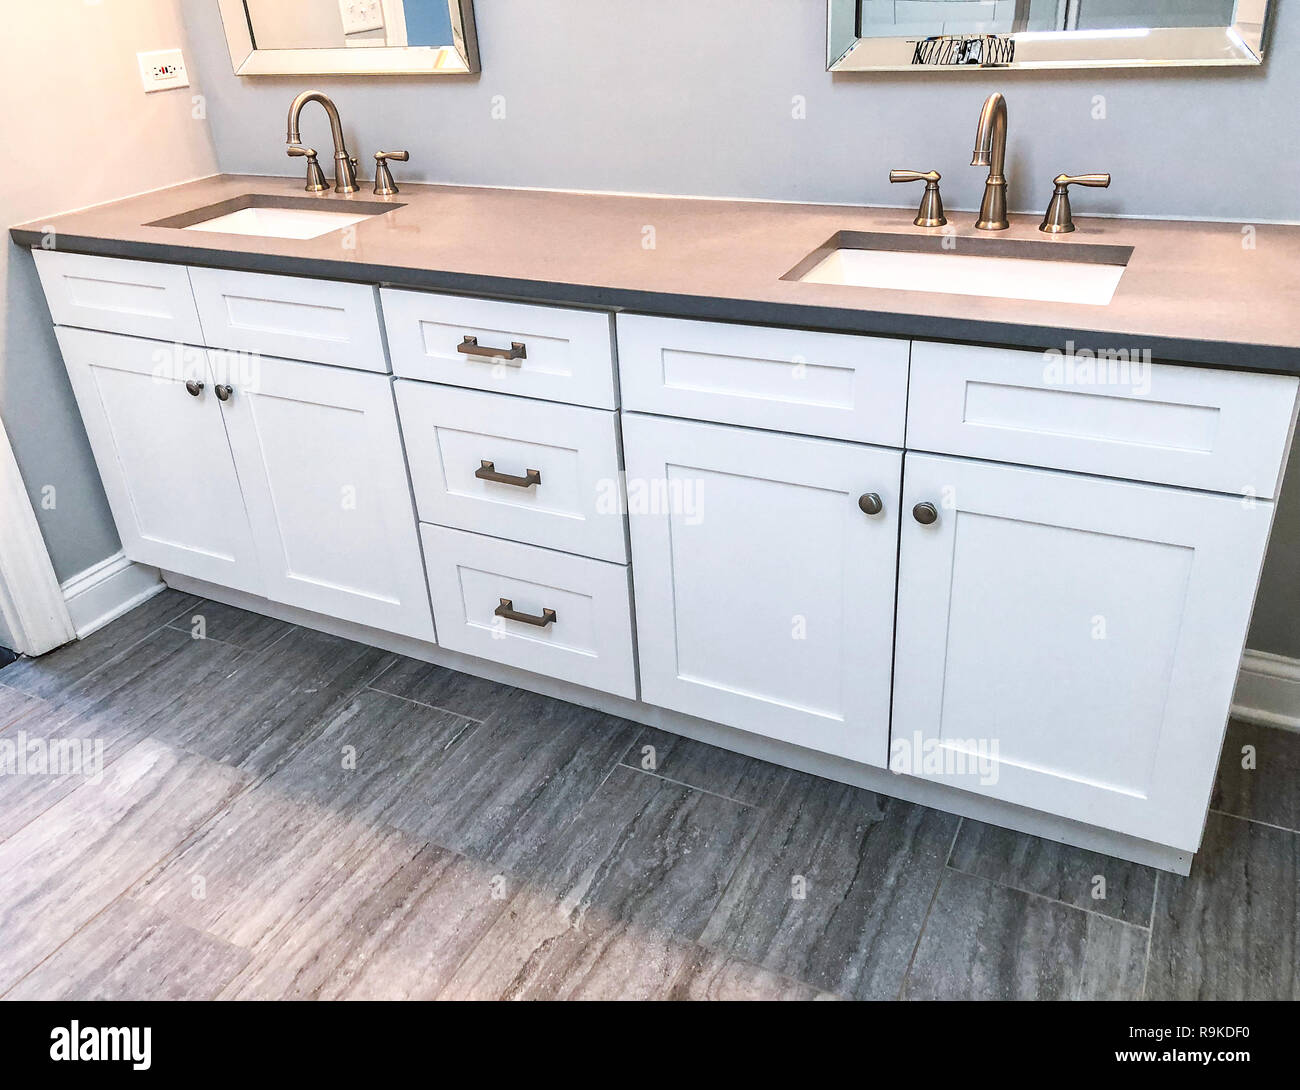 Moderne Badezimmer-Innenausstattung der weißen Shaker-Schränke, Granit-Arbeitsplatte, zwei weiße Waschbecken und Porzellanfliesen Stockfoto